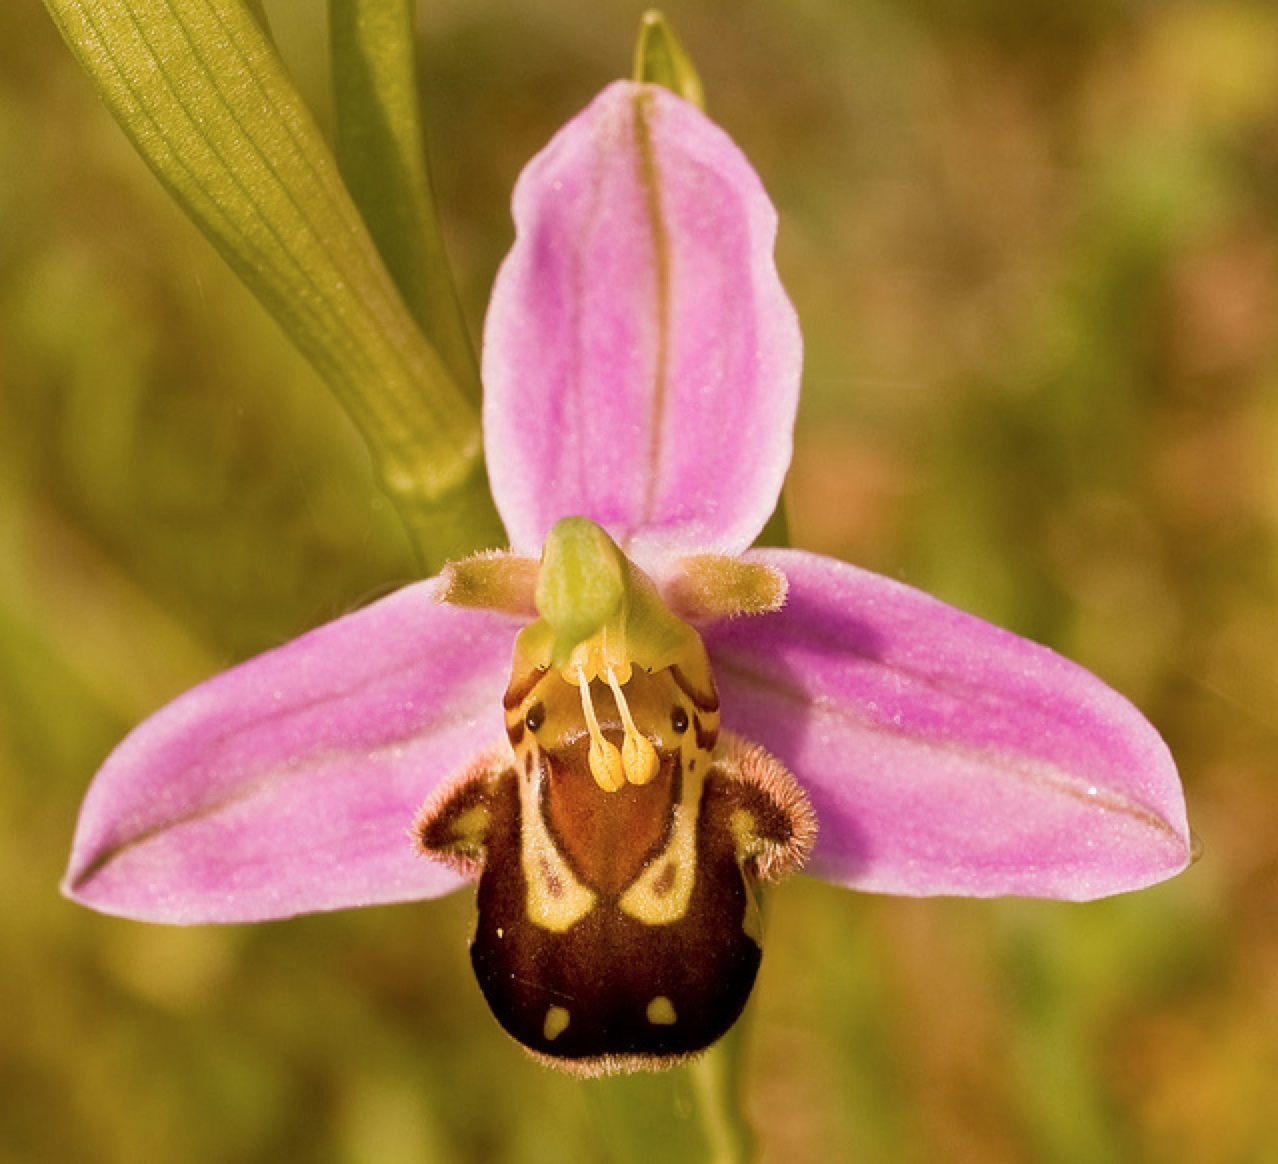 Picha zinaonyesha orchid yenye kituo cha njano mkali na petals nyeupe.